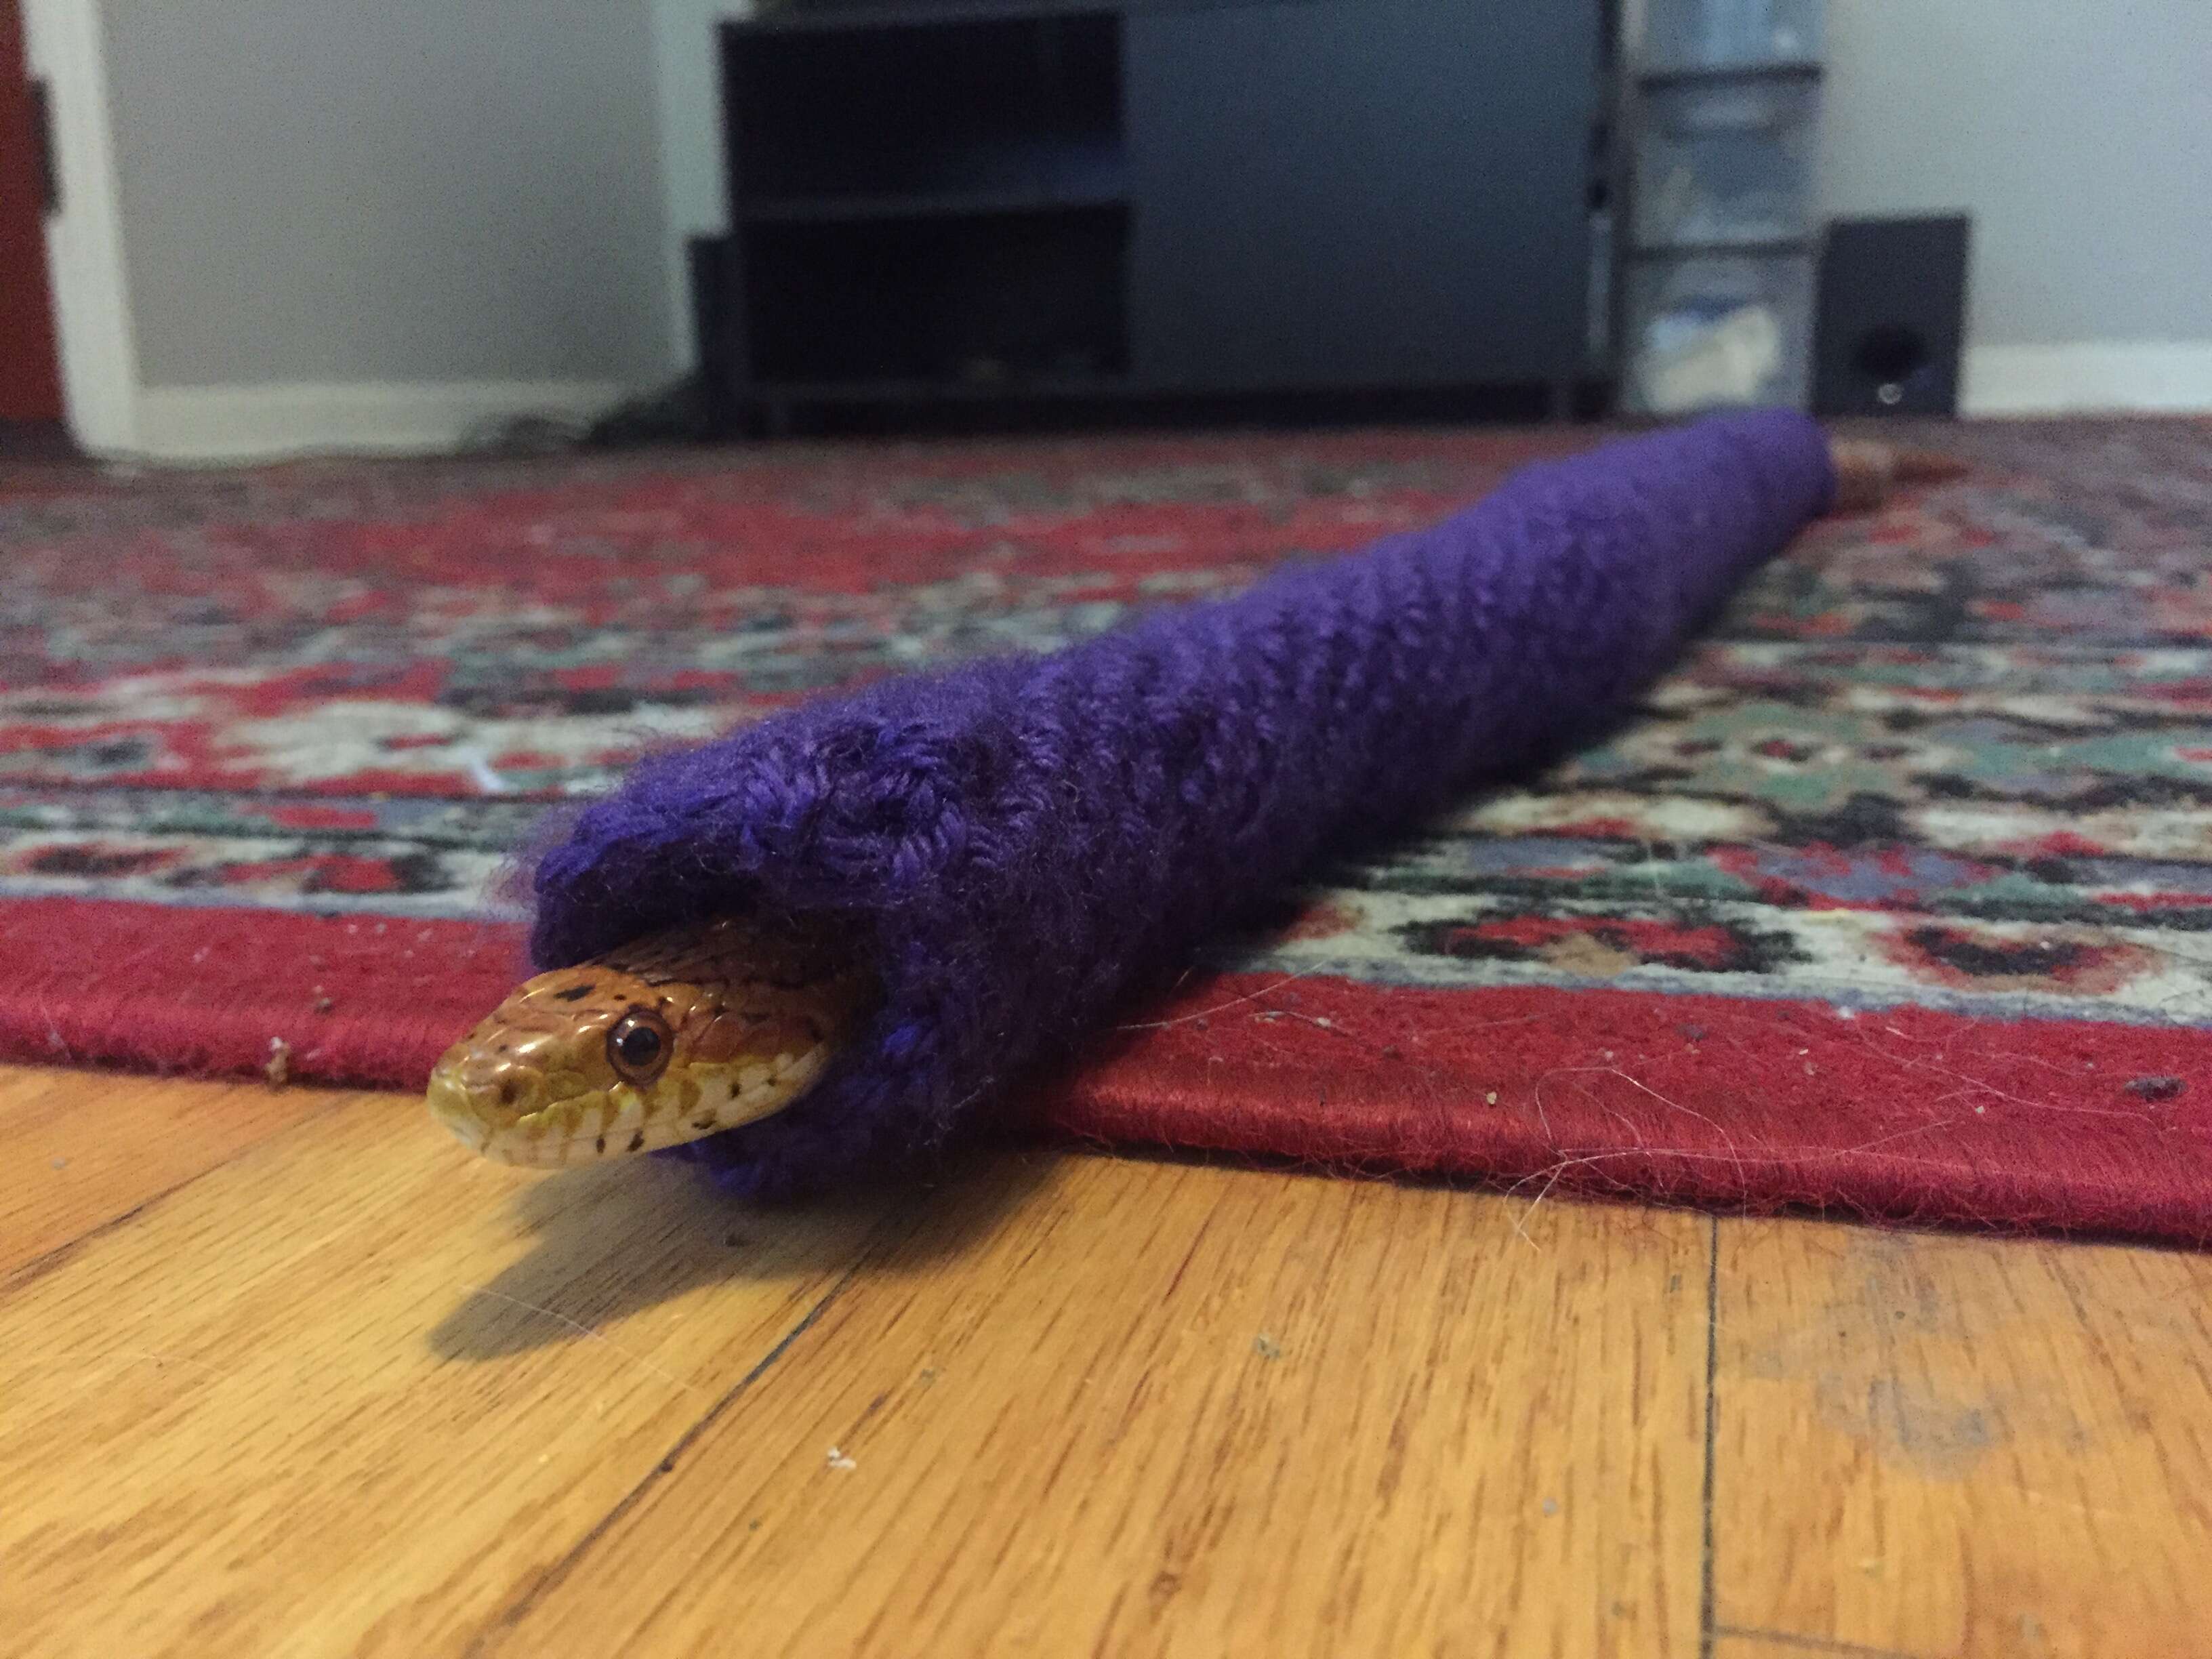 Snake inside of purple sweater